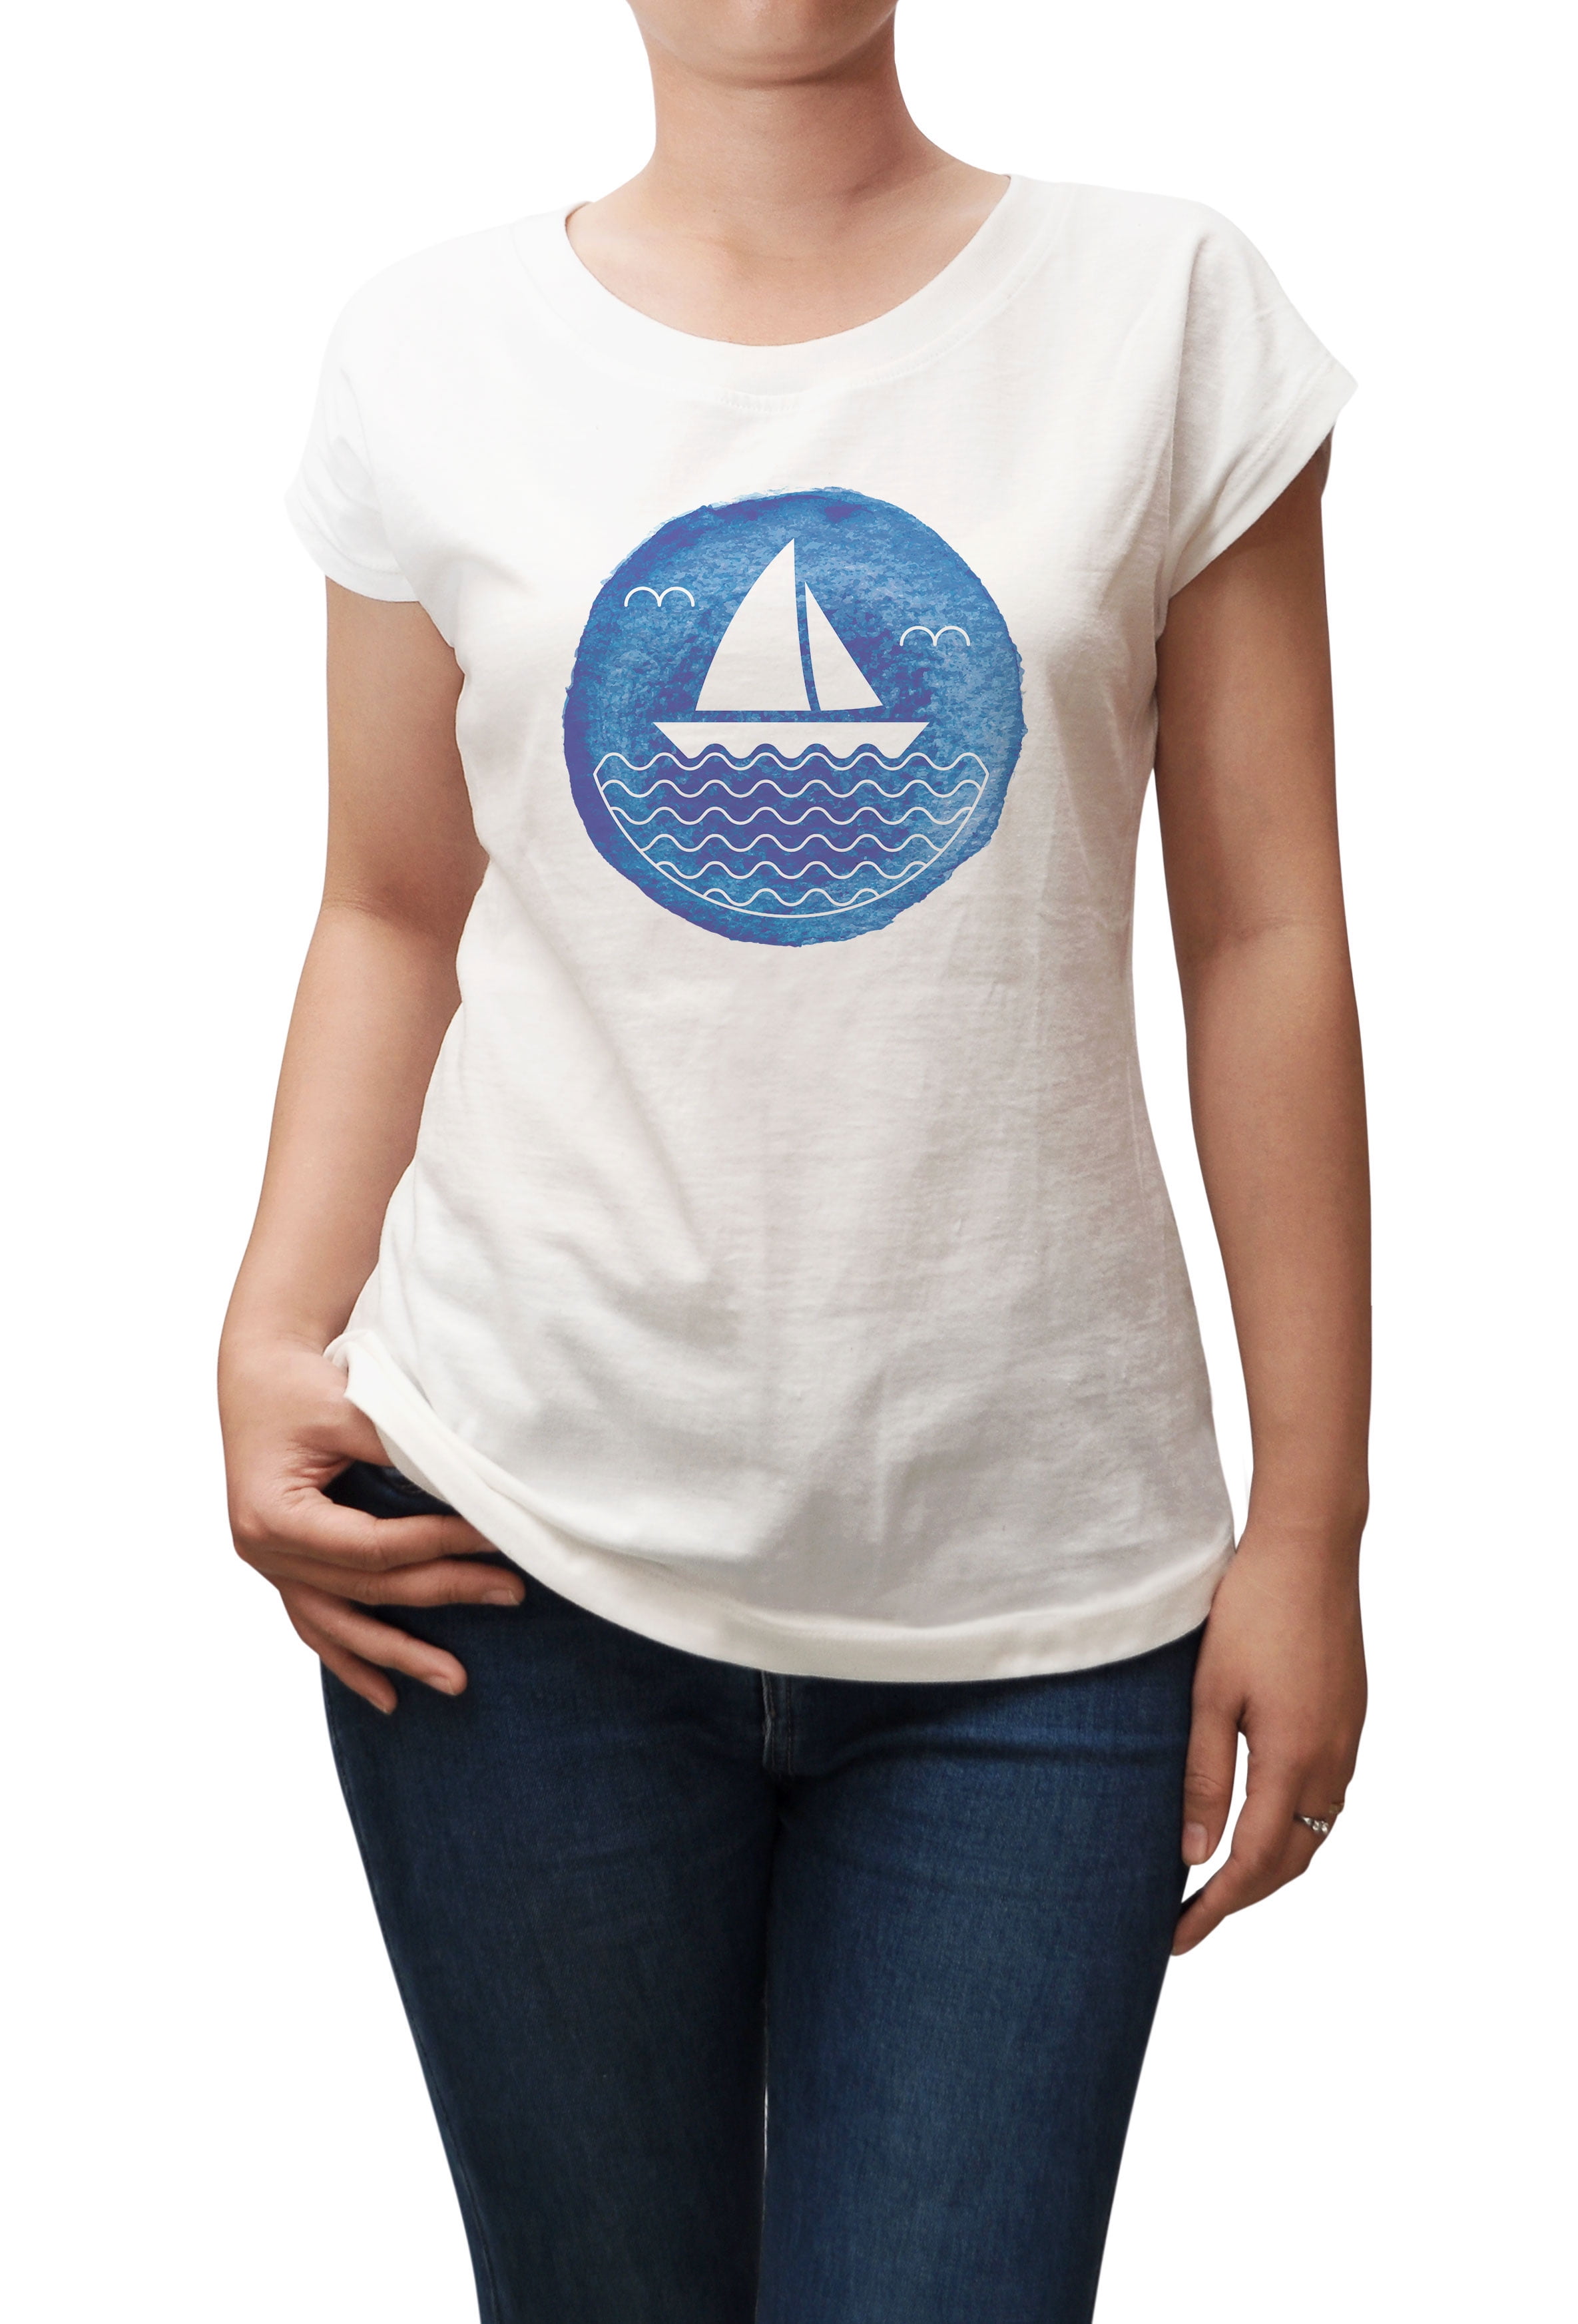 Sailboat Shirt, Watercolor Shirt, Sailing Shirt, Nautical Shirt